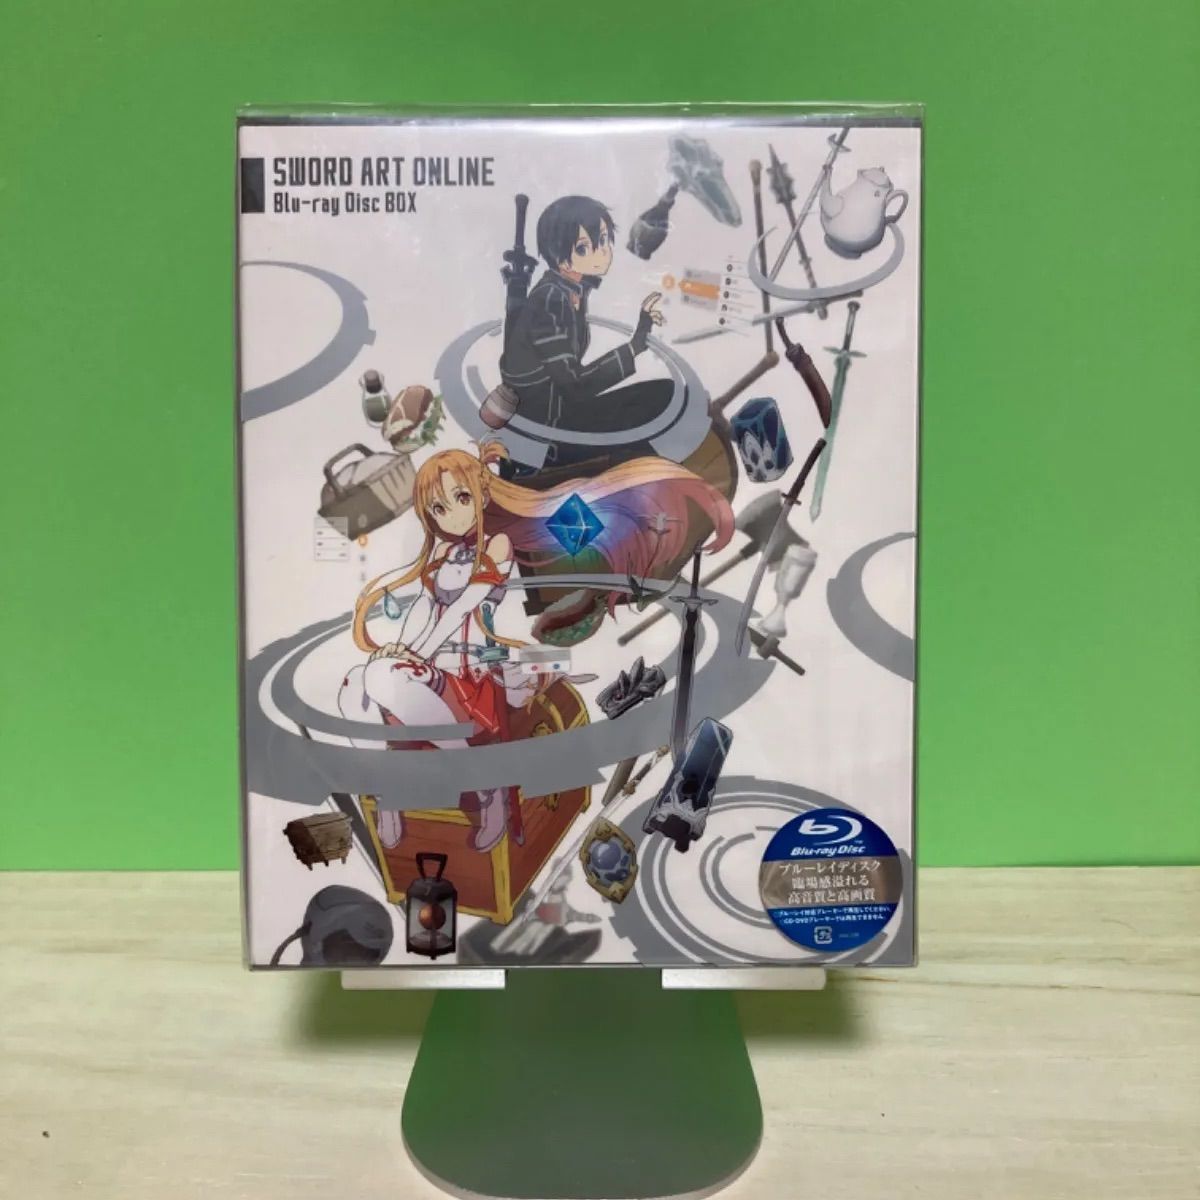 ソードアート・オンライン 完全生産限定版 Blu-ray Box - メルカリ